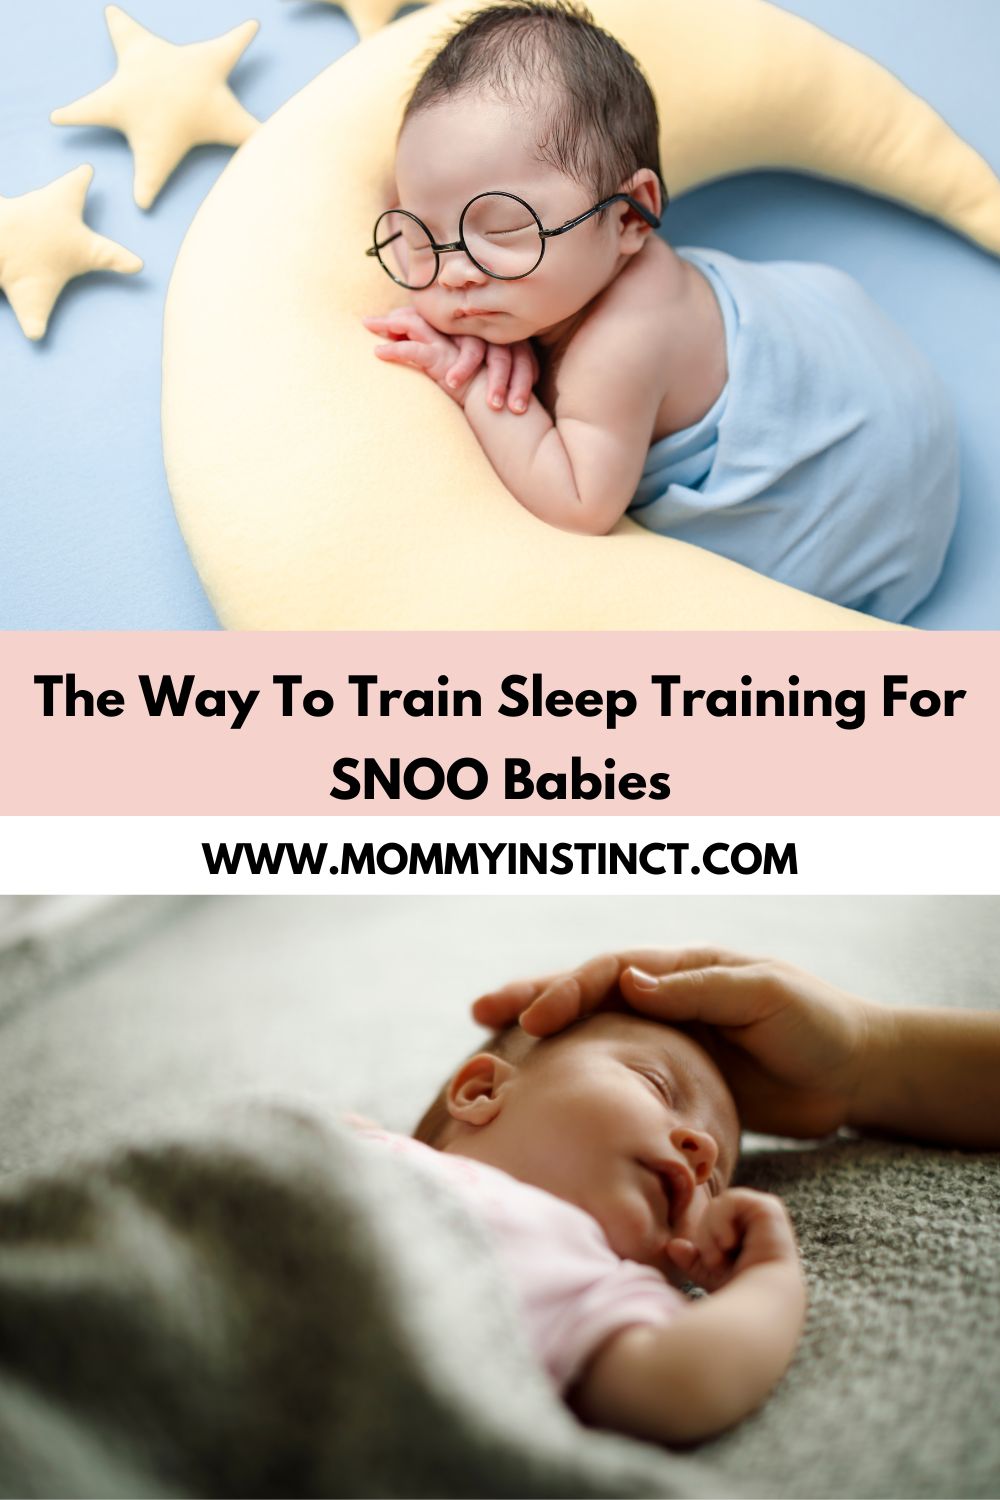 The Way To Train Sleep Training For SNOO Babies
